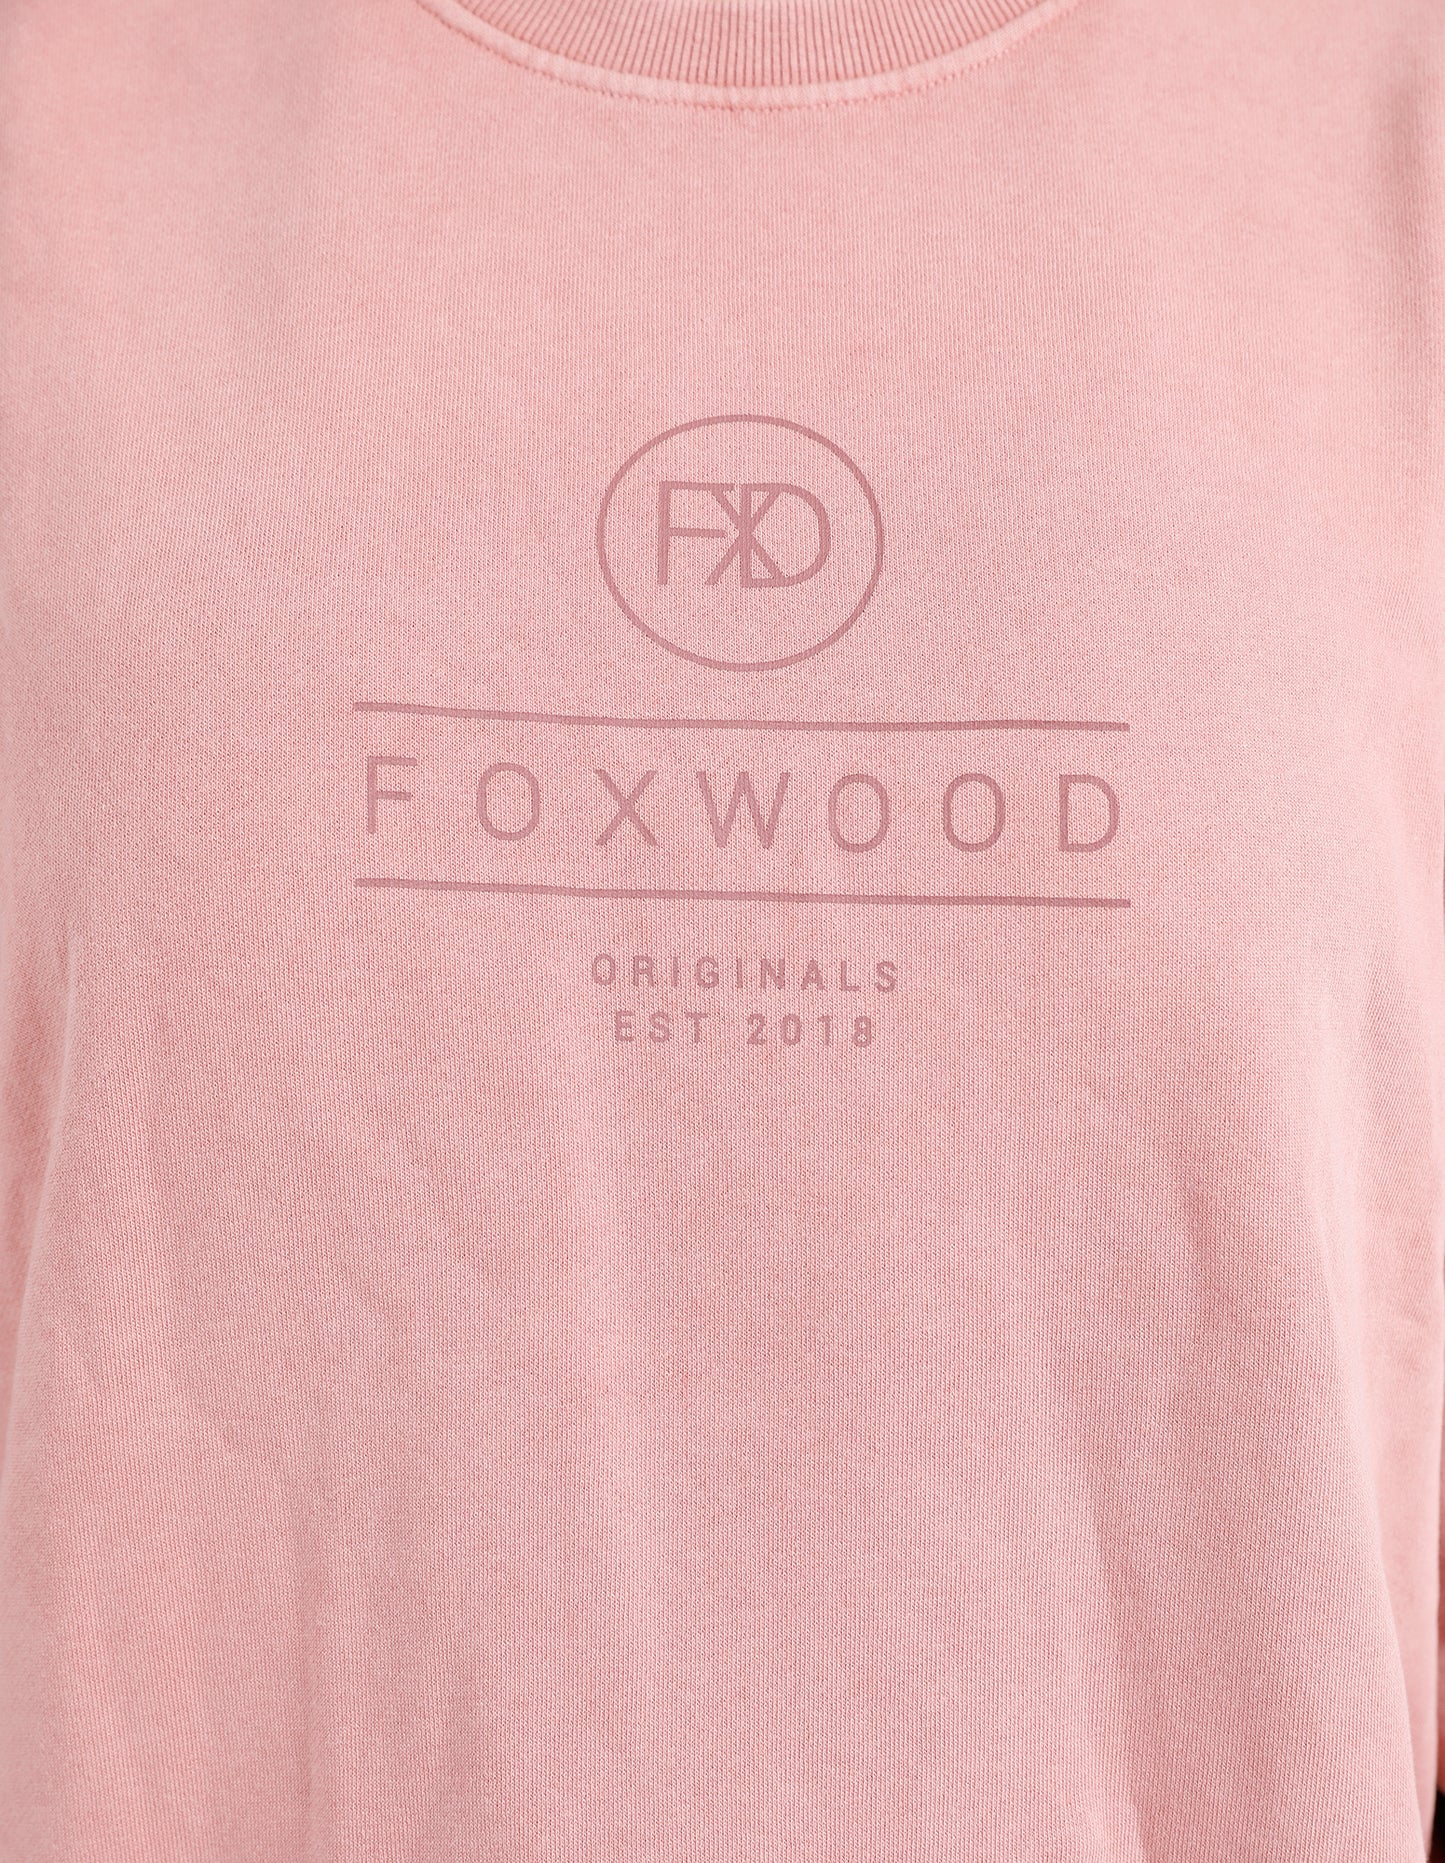 Everyday Crew - Pink - Foxwood